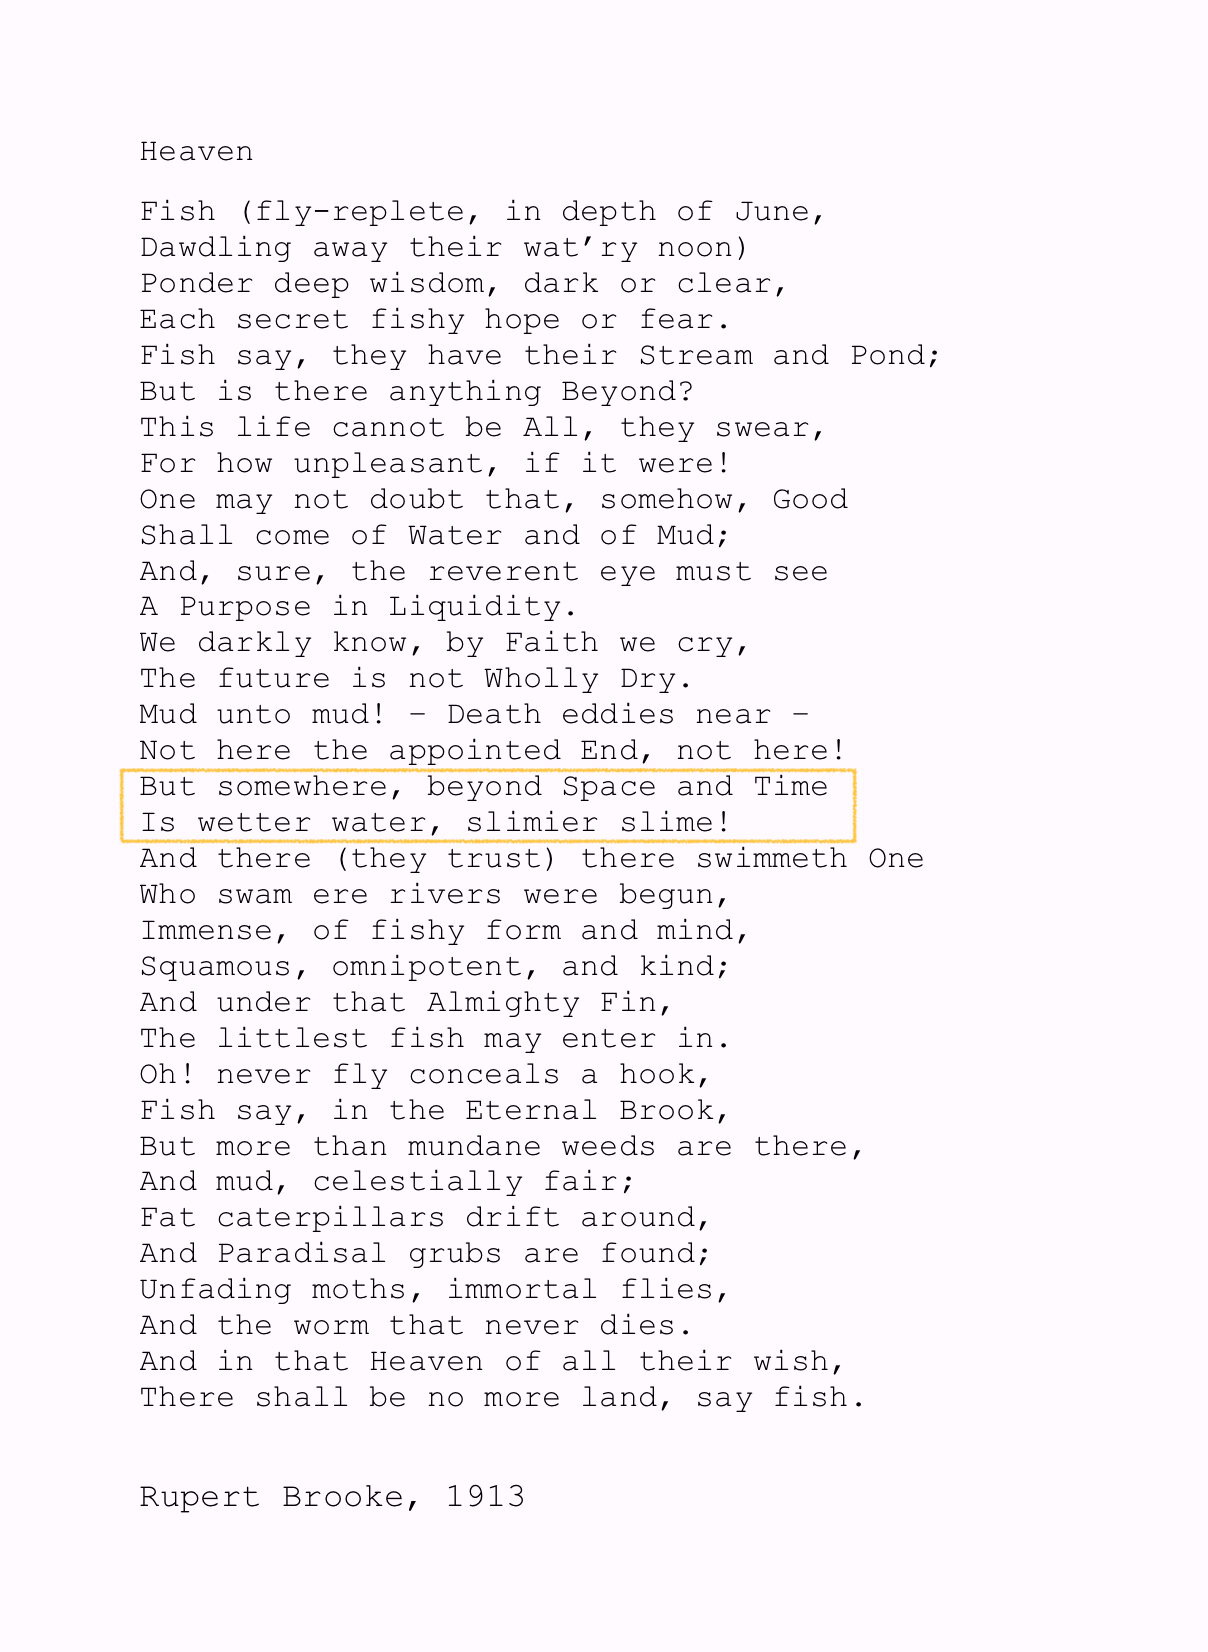 Heavan, poem by Rupert Brooke 